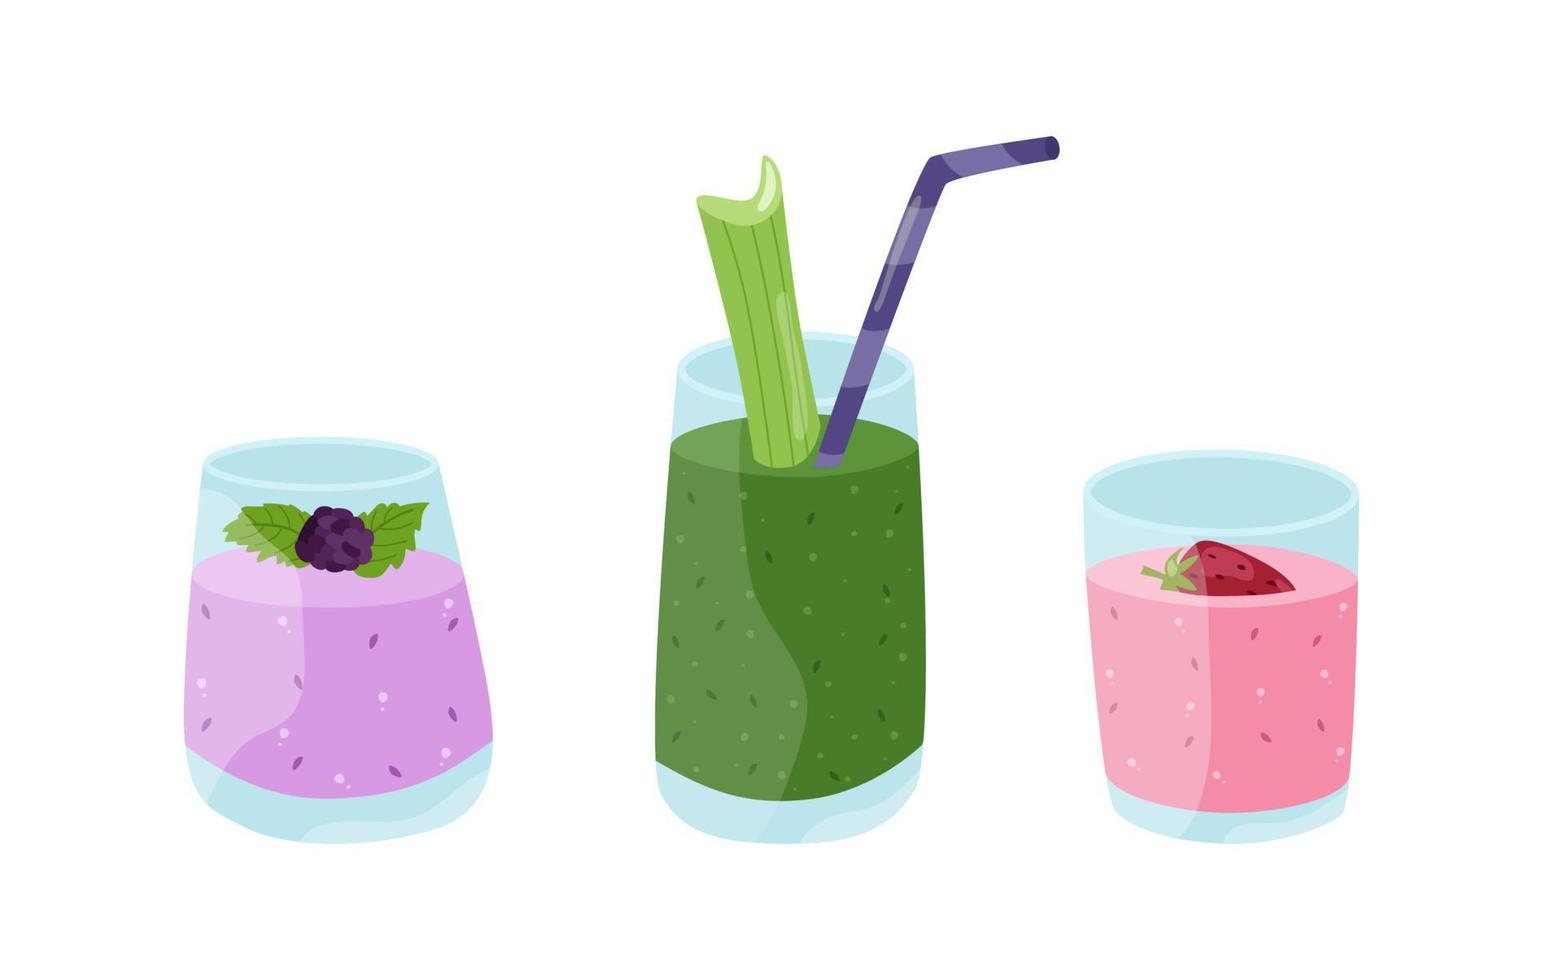 batidos de playa de verano cócteles con hielo. lila con moras, verde con espinacas y apio, rosa con fresas. ilustración vectorial de bebidas refrescantes en vasos con tubos. vector